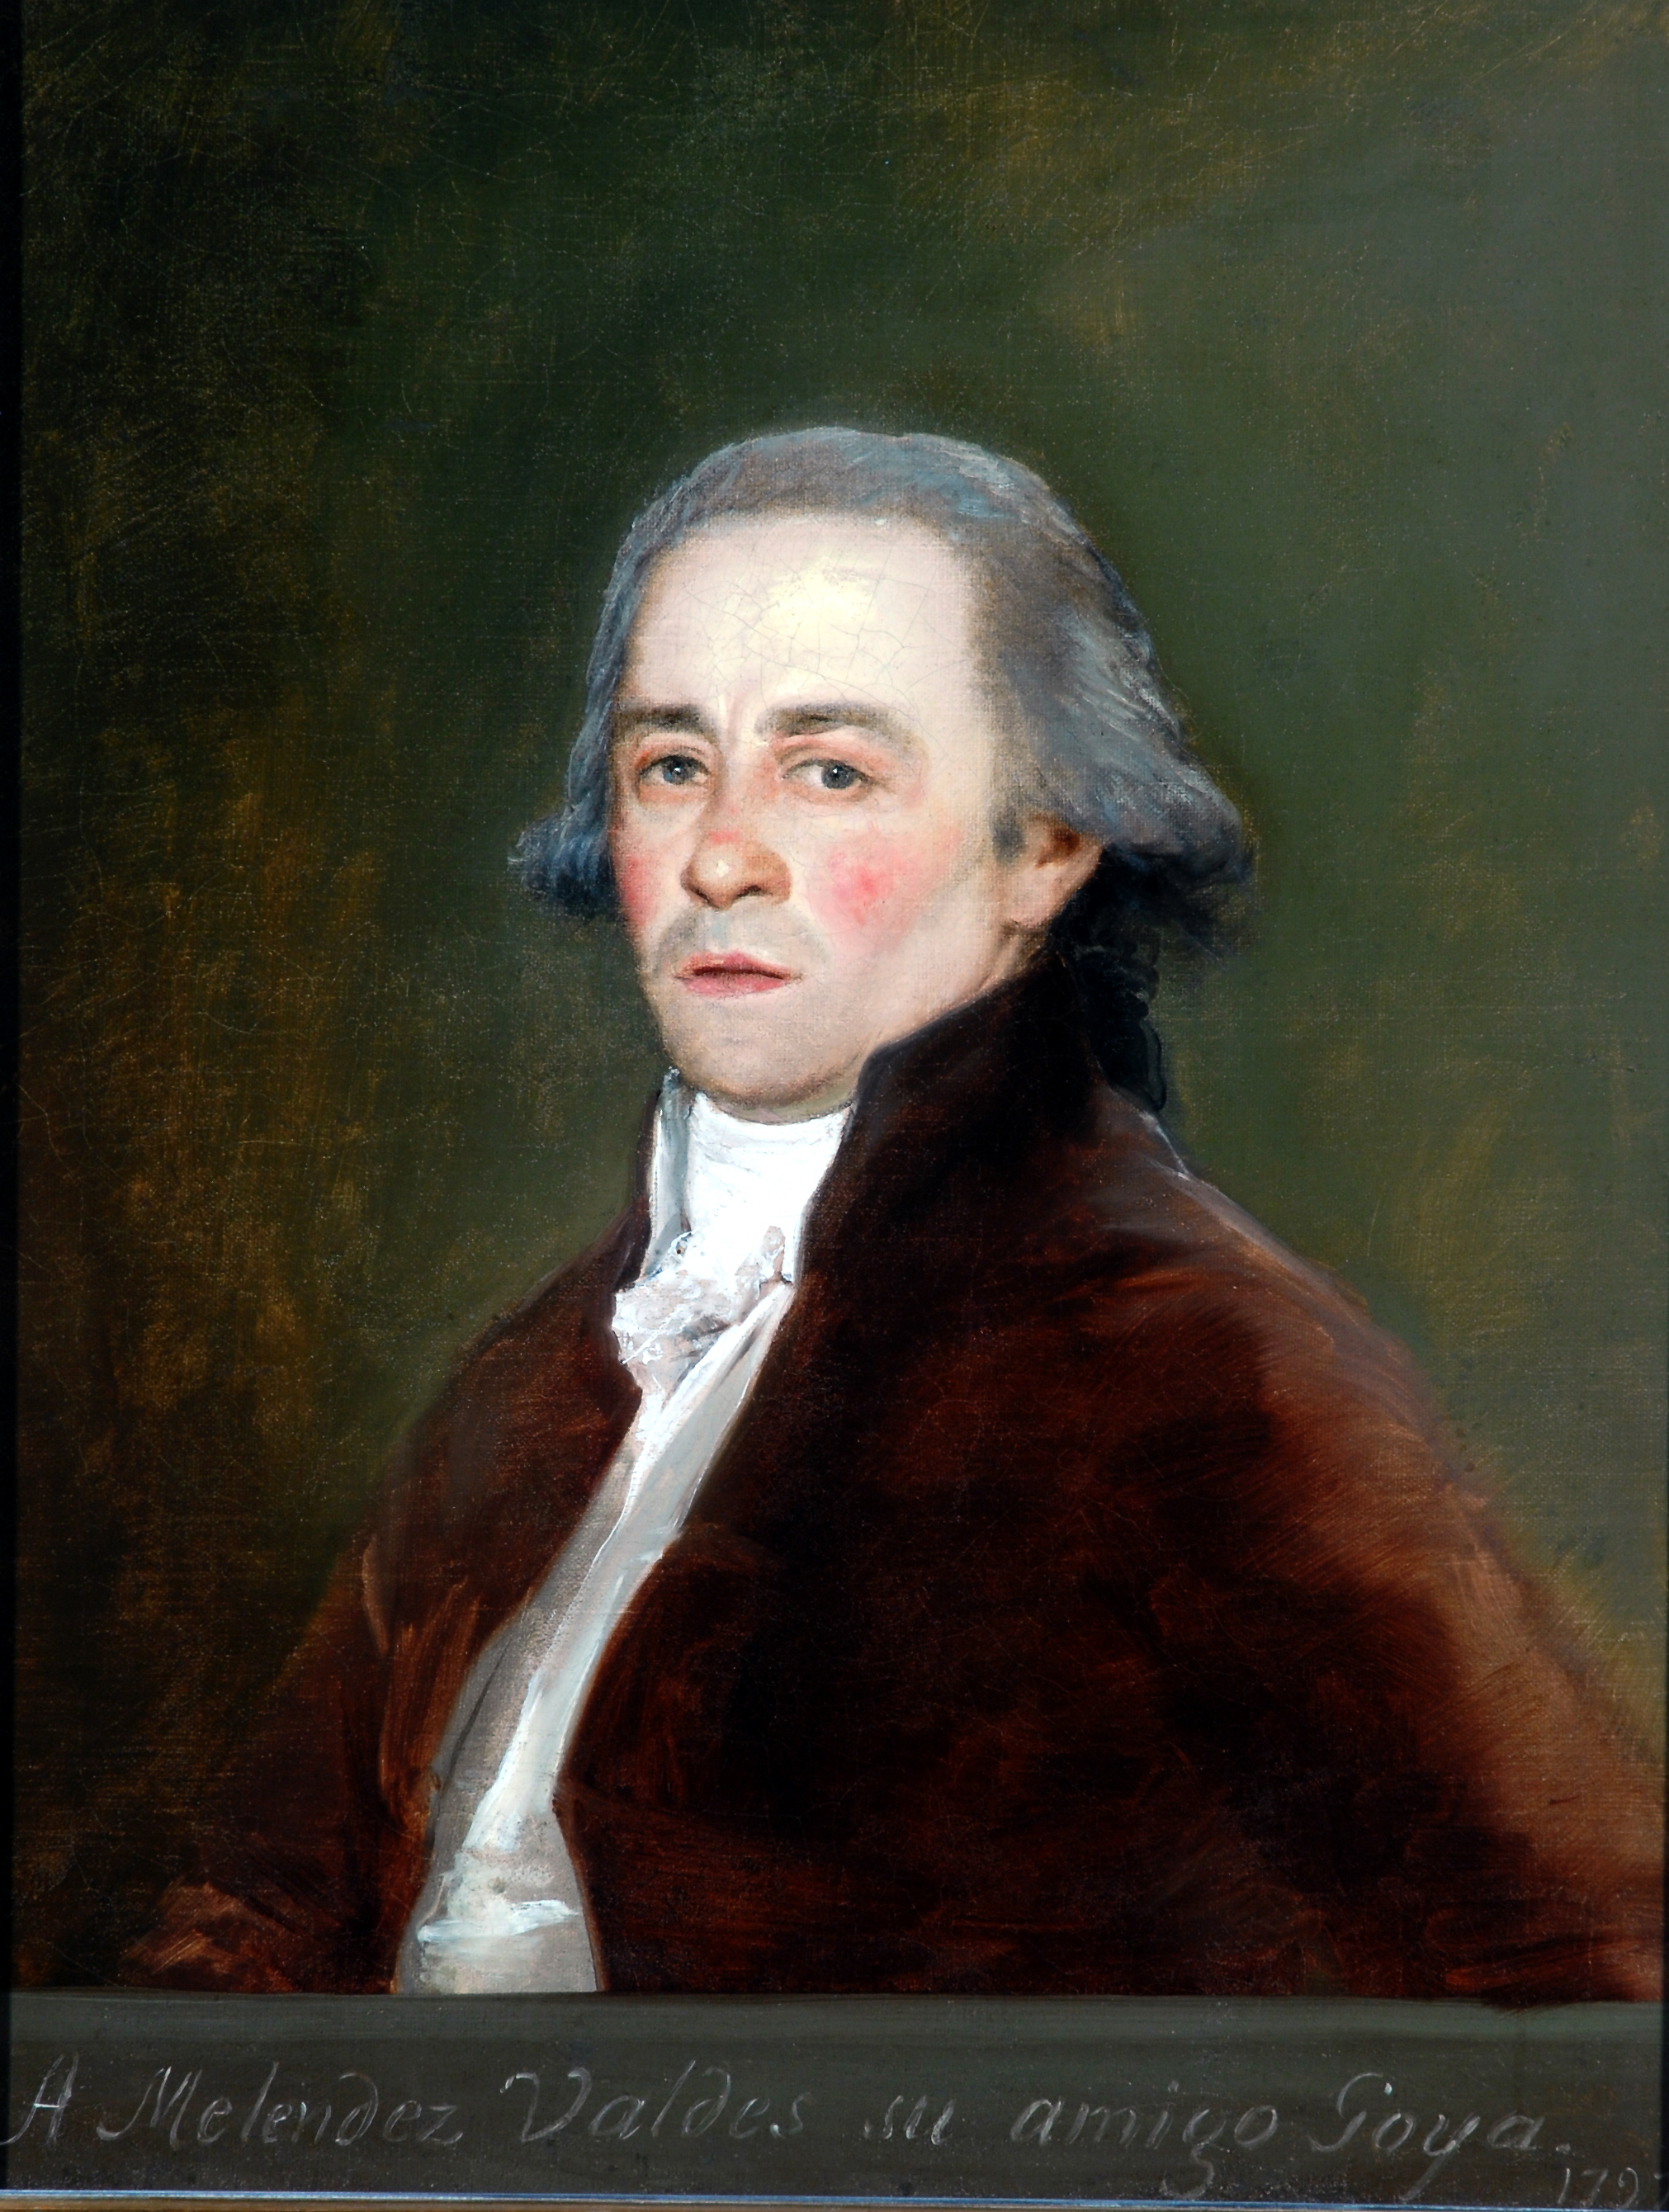 Juan Antonio Meléndez Valdés by Francisco Goya - 1797 - 73.3 x 57.1 cm 